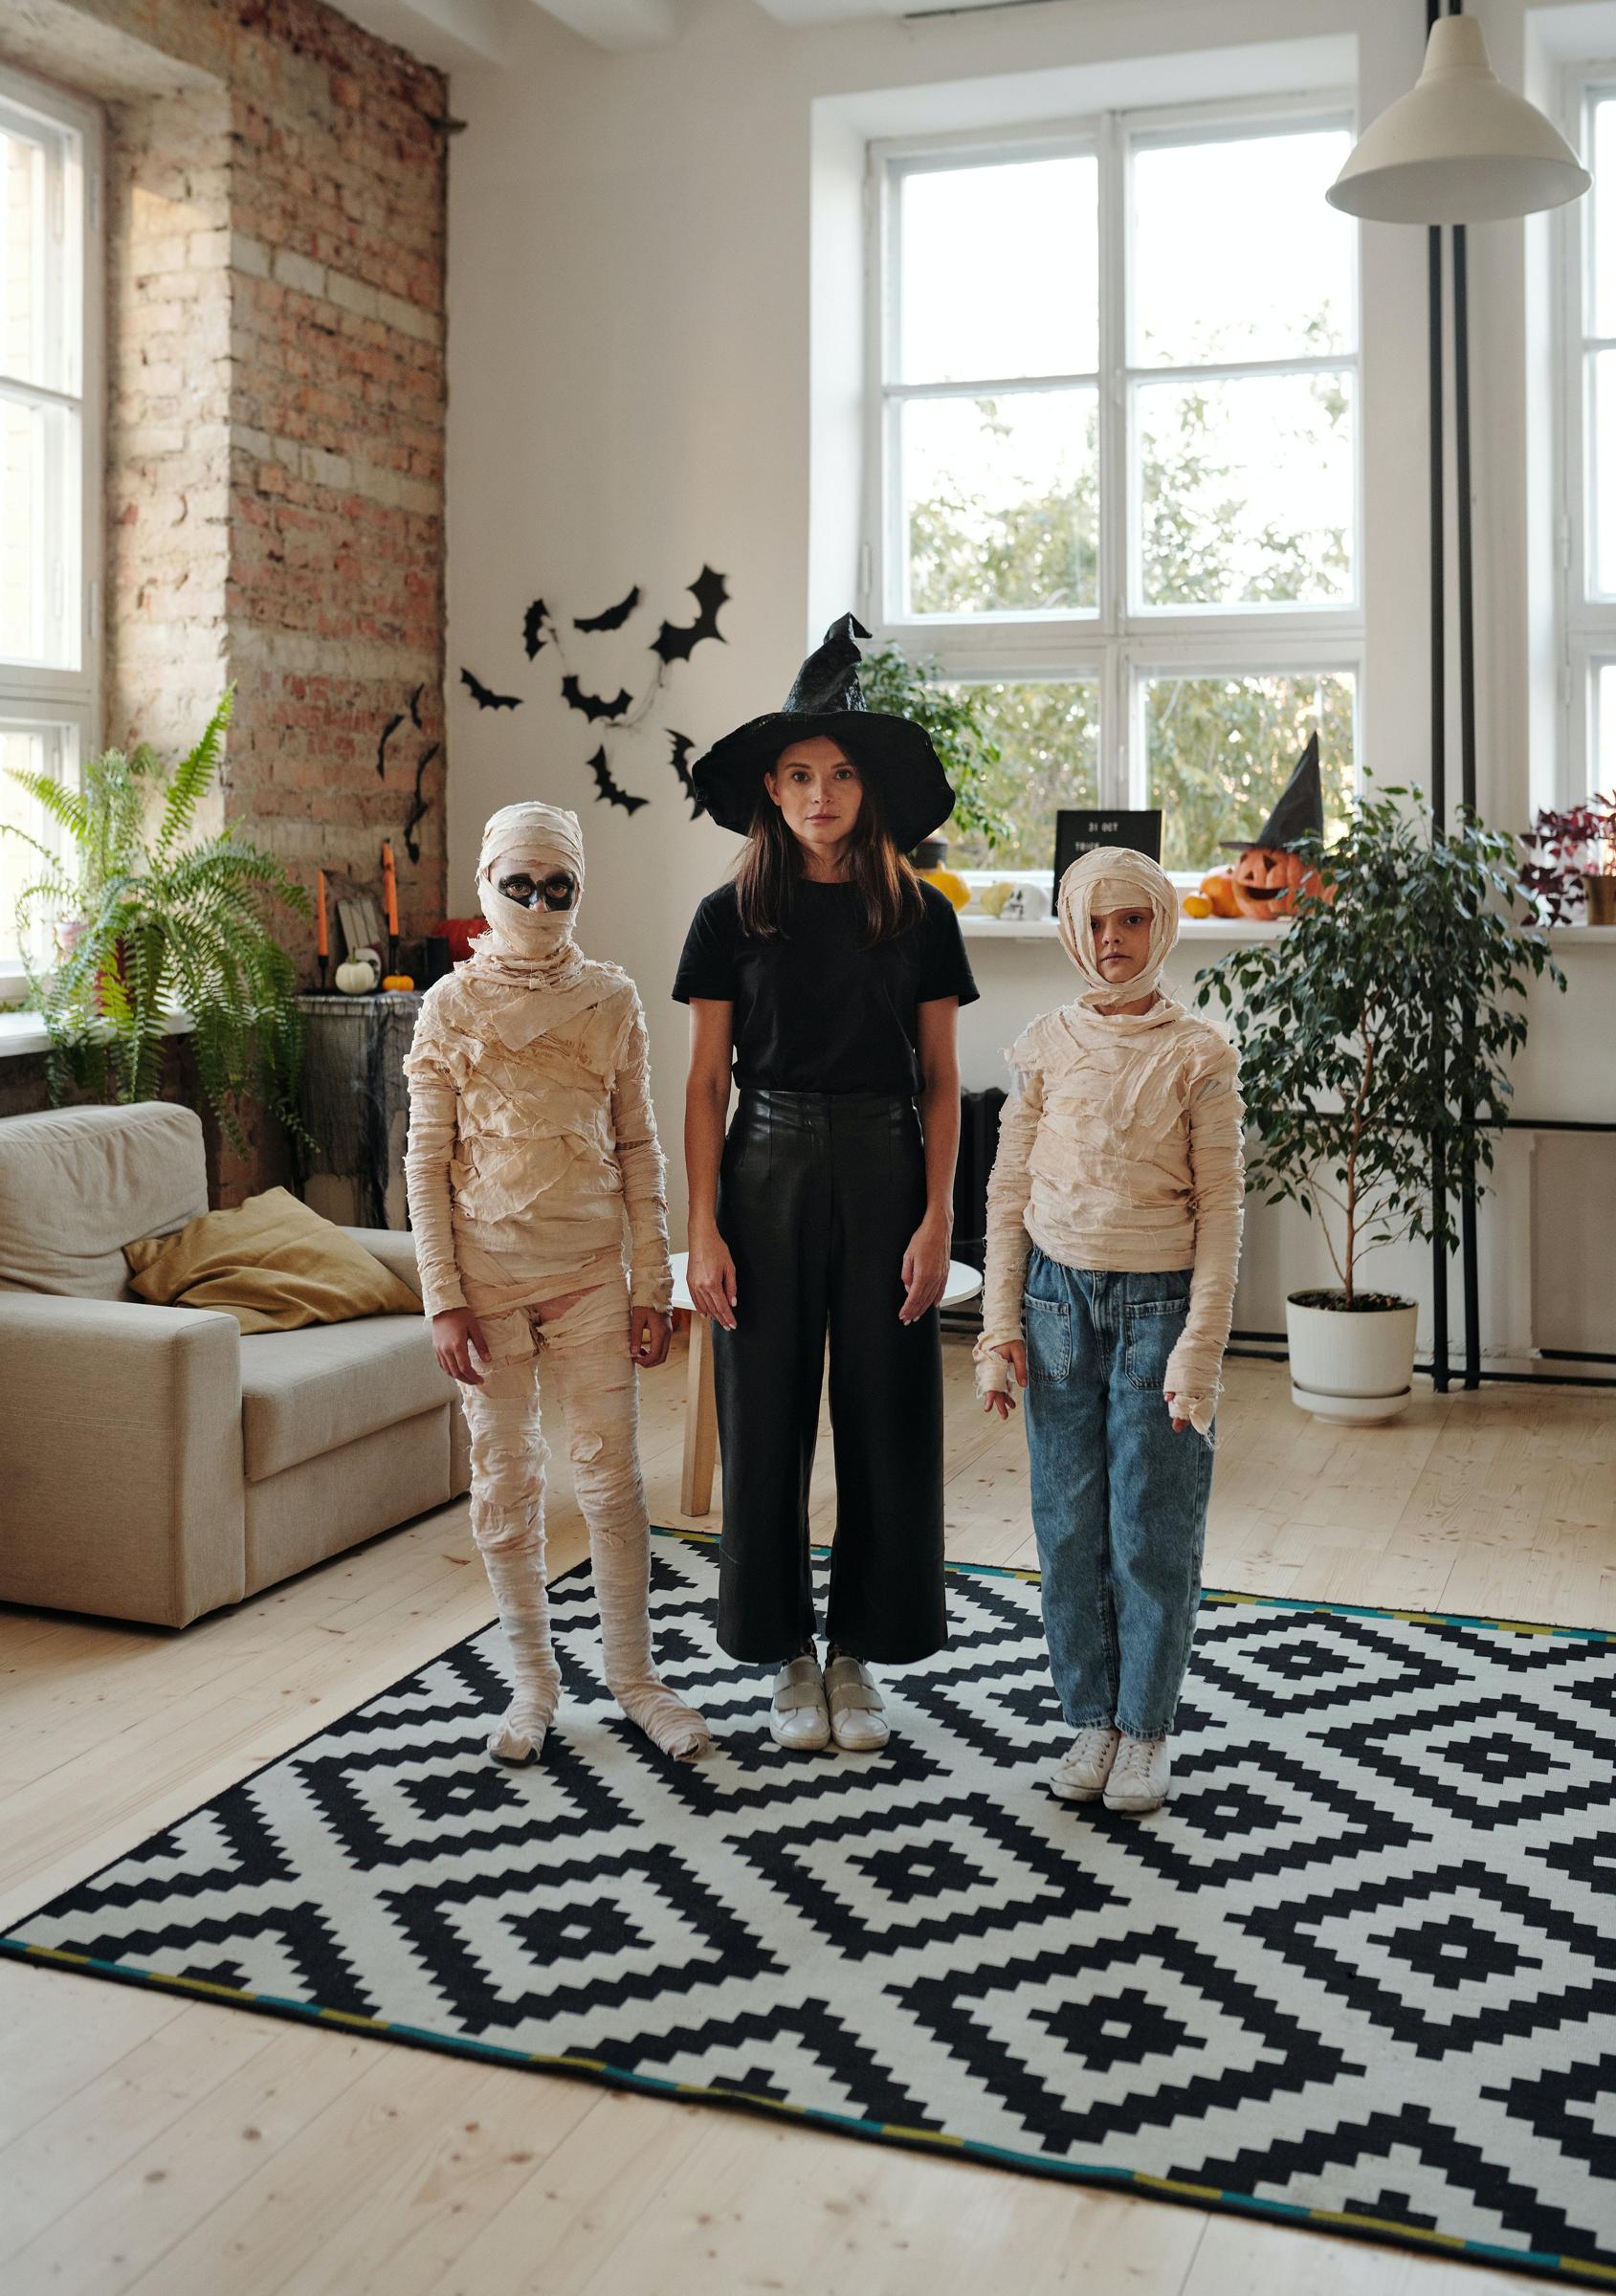 Diy kostiumy halloween: proste pomysły do wykonania w domu